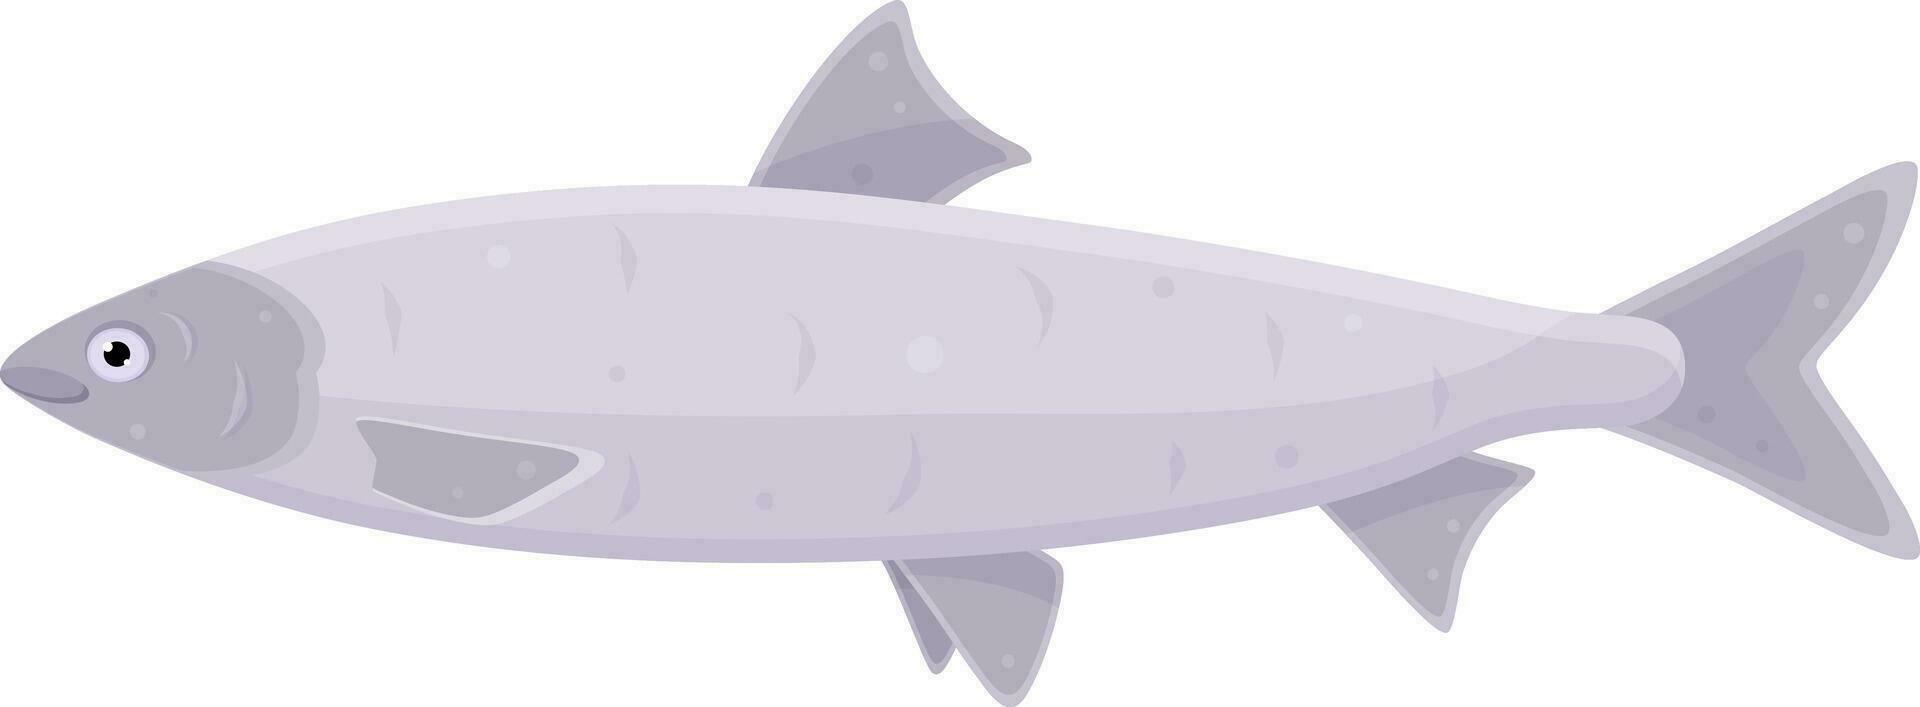 cor vetor ilustração do atum peixe, apropriado nutrição, frutos do mar, frutos do mar iguarias, enlatado peixe